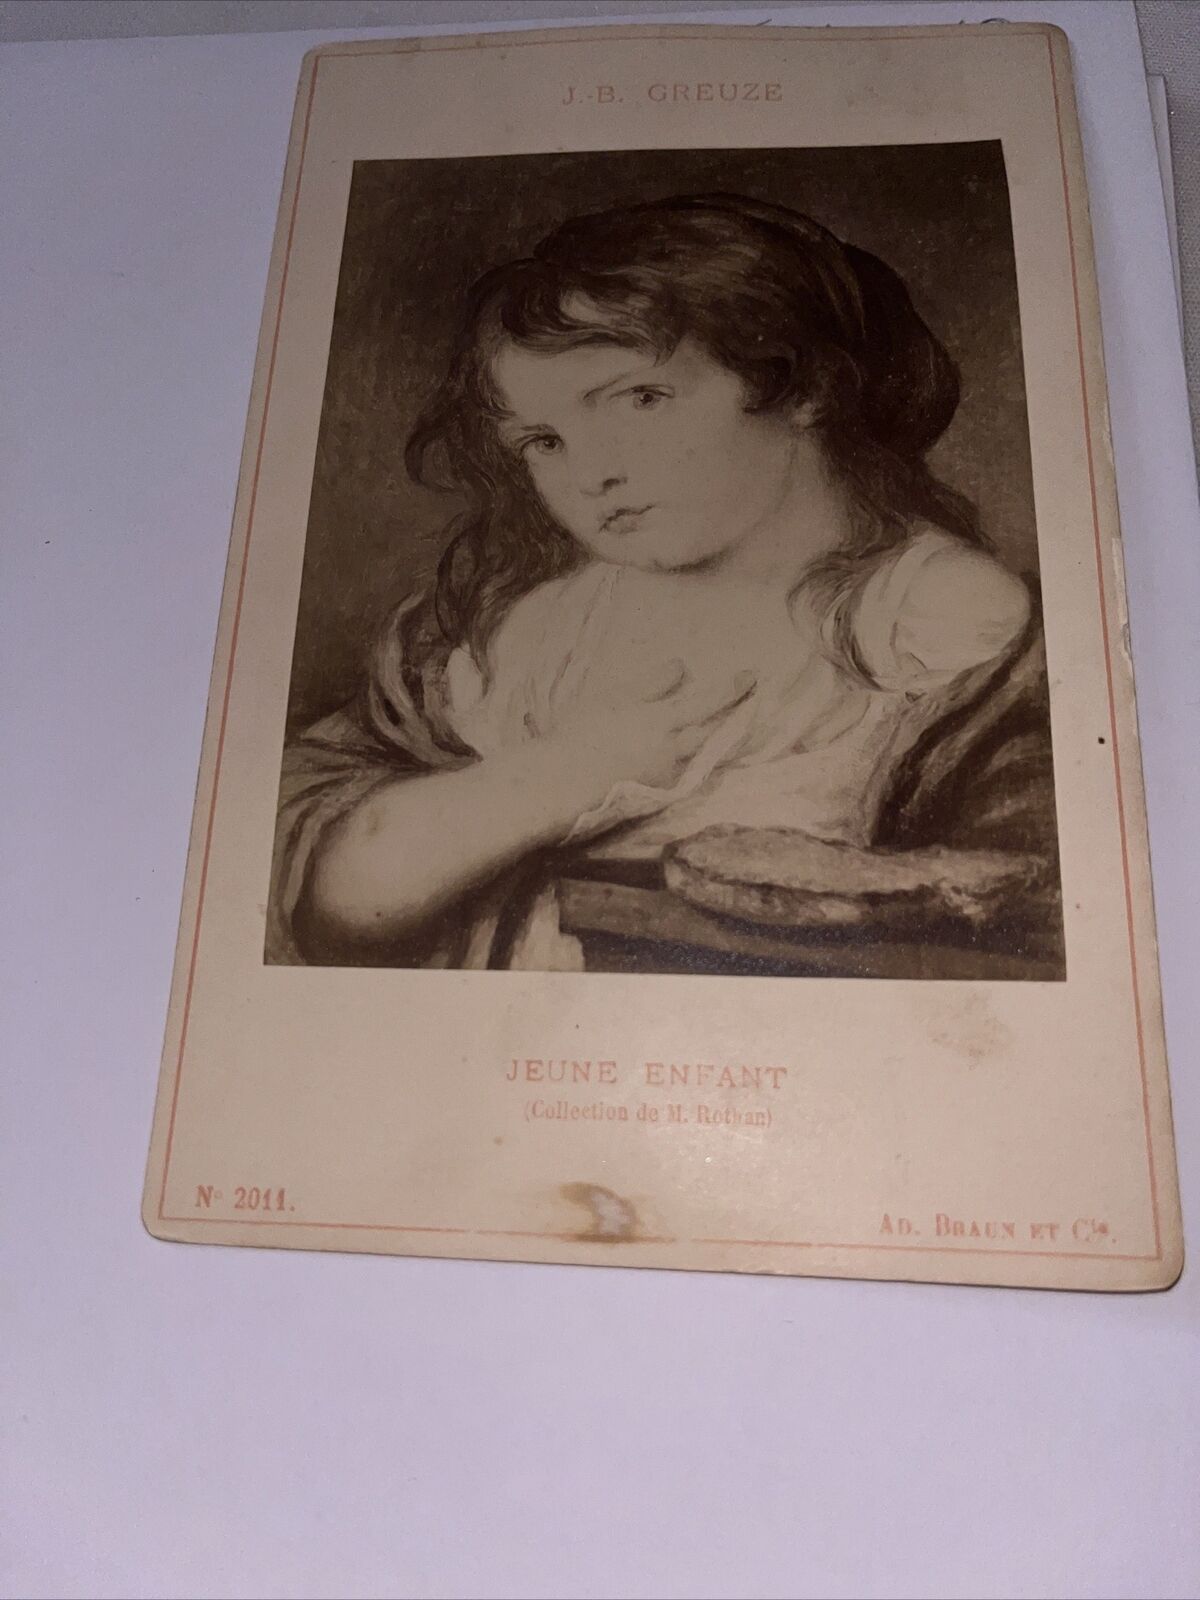 Antique Cabinet Card: Jean-Baptiste Greuze “Jeune Enfant” Young Infant